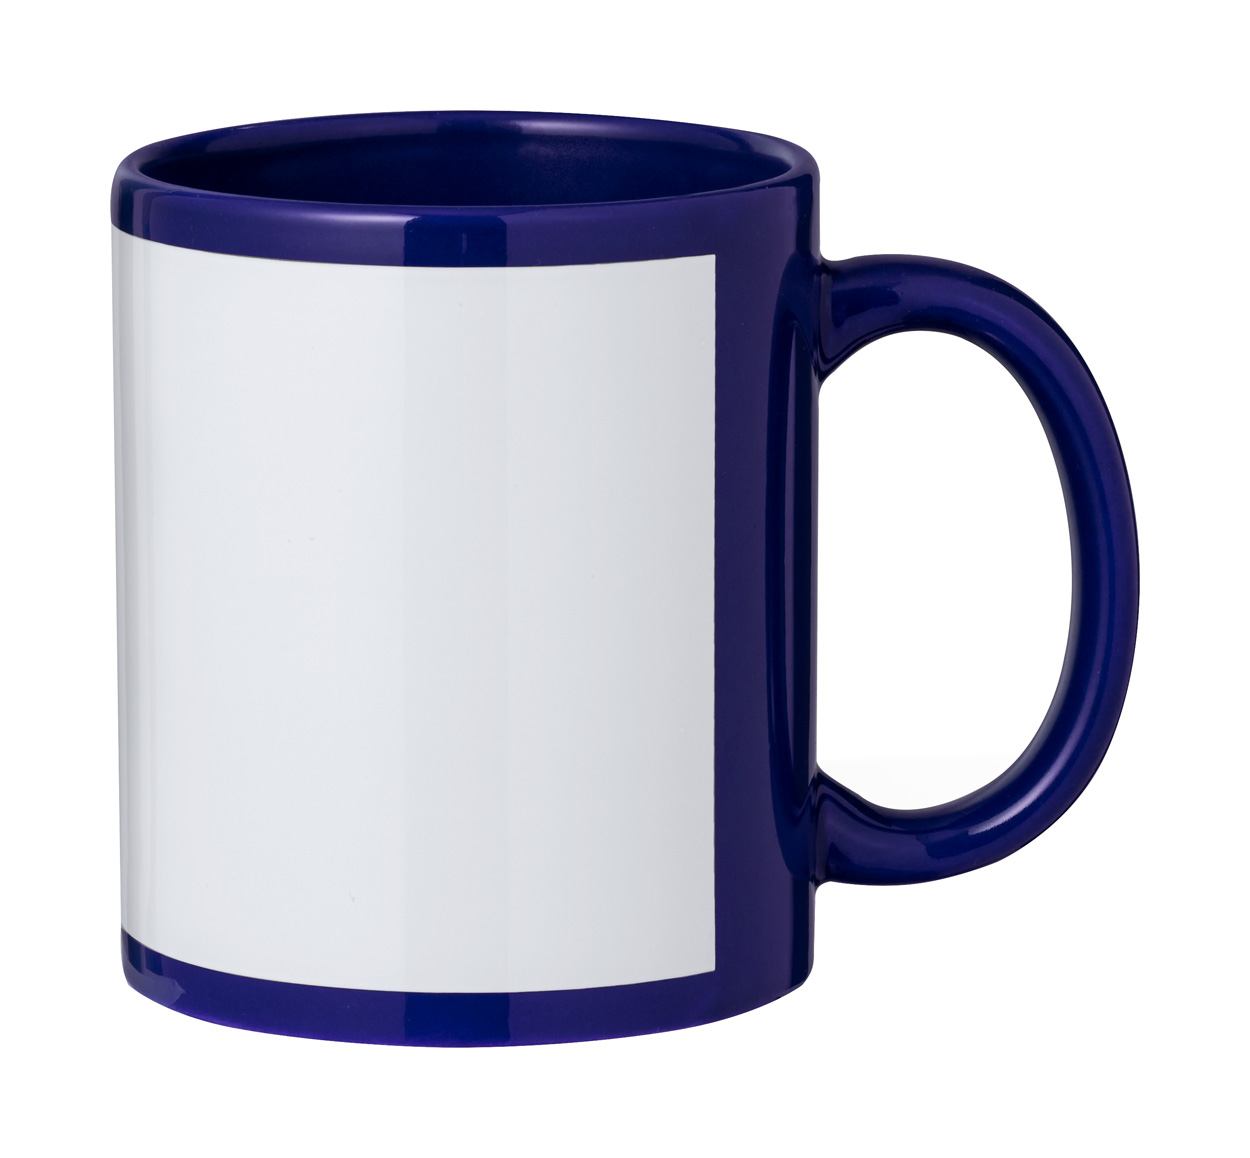 Orchix mug for sublimation - blue